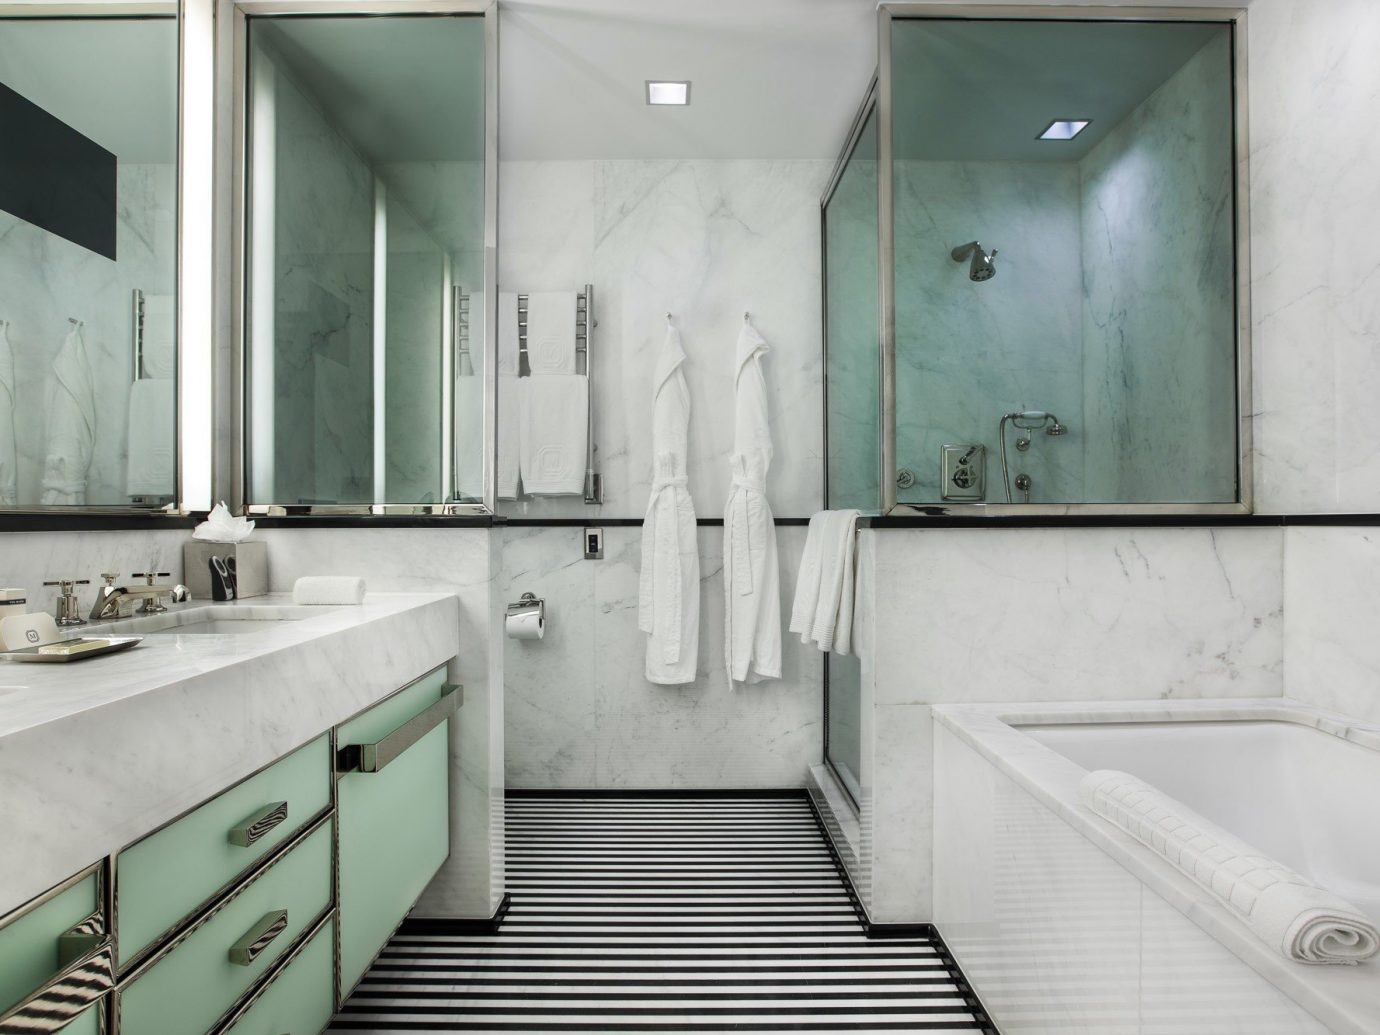 Hotels indoor wall bathroom room property floor interior design plumbing fixture toilet sink public toilet Design tub